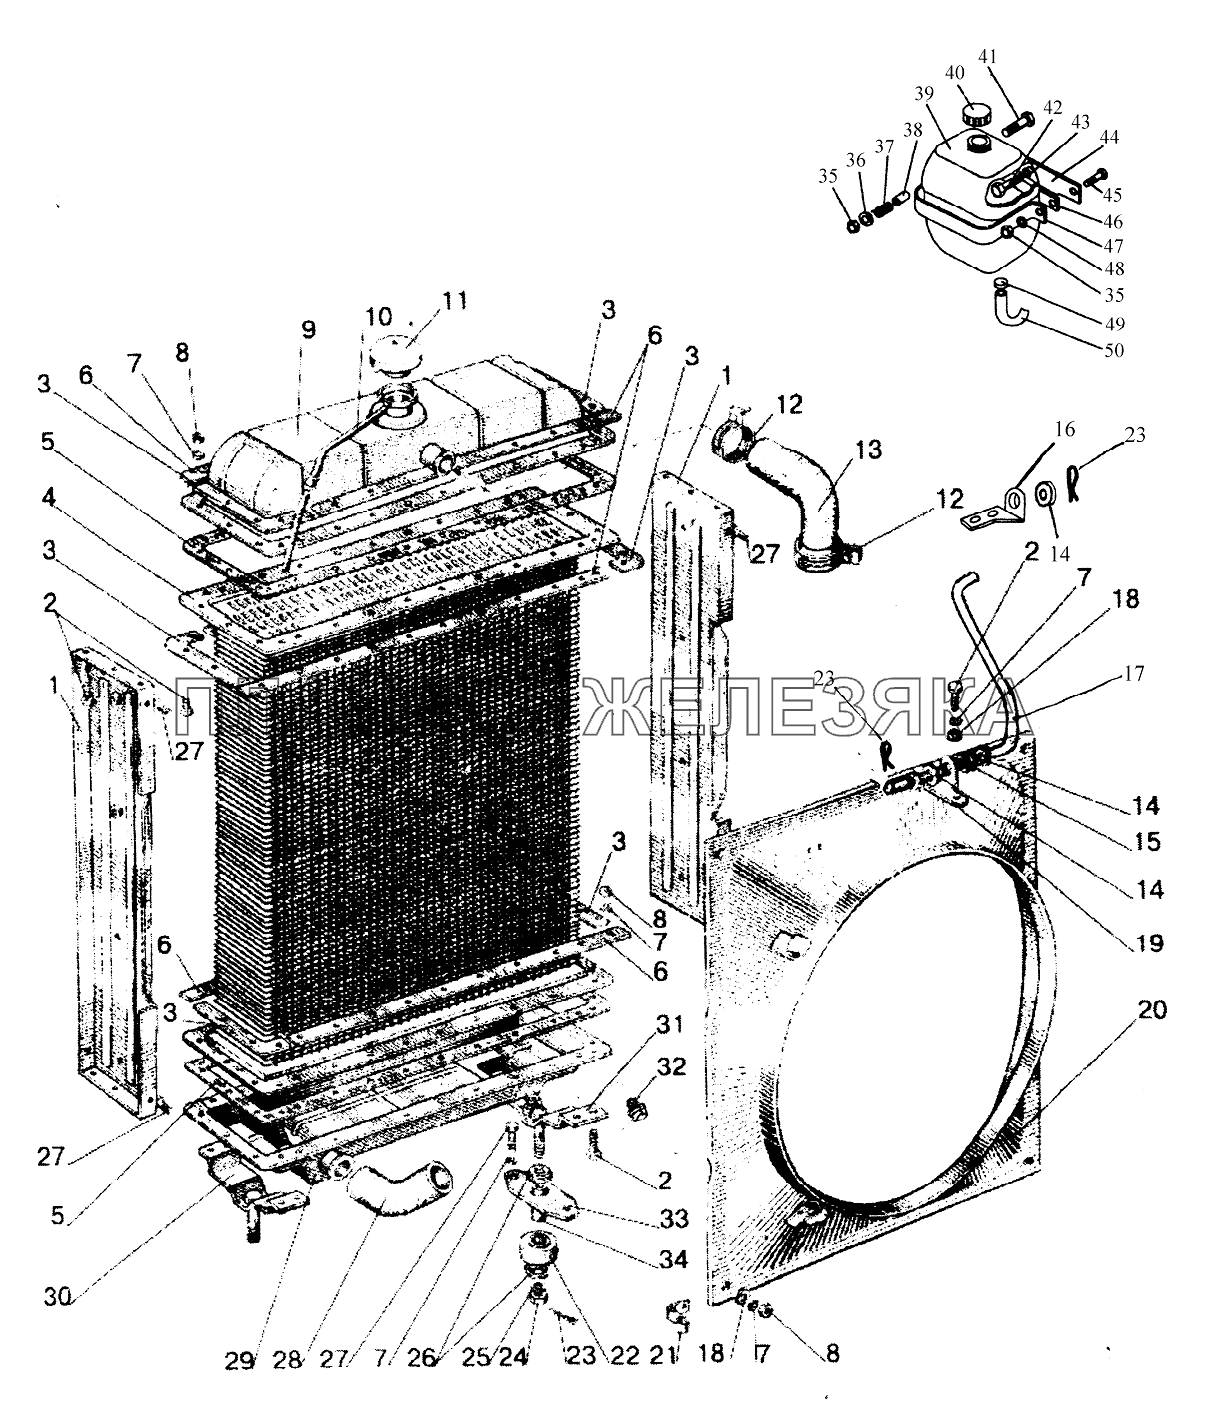 Радиатор водяной (для Д-245/Д-245С) (1025, 1025.2) Беларус-1025/1025.2/1025.3